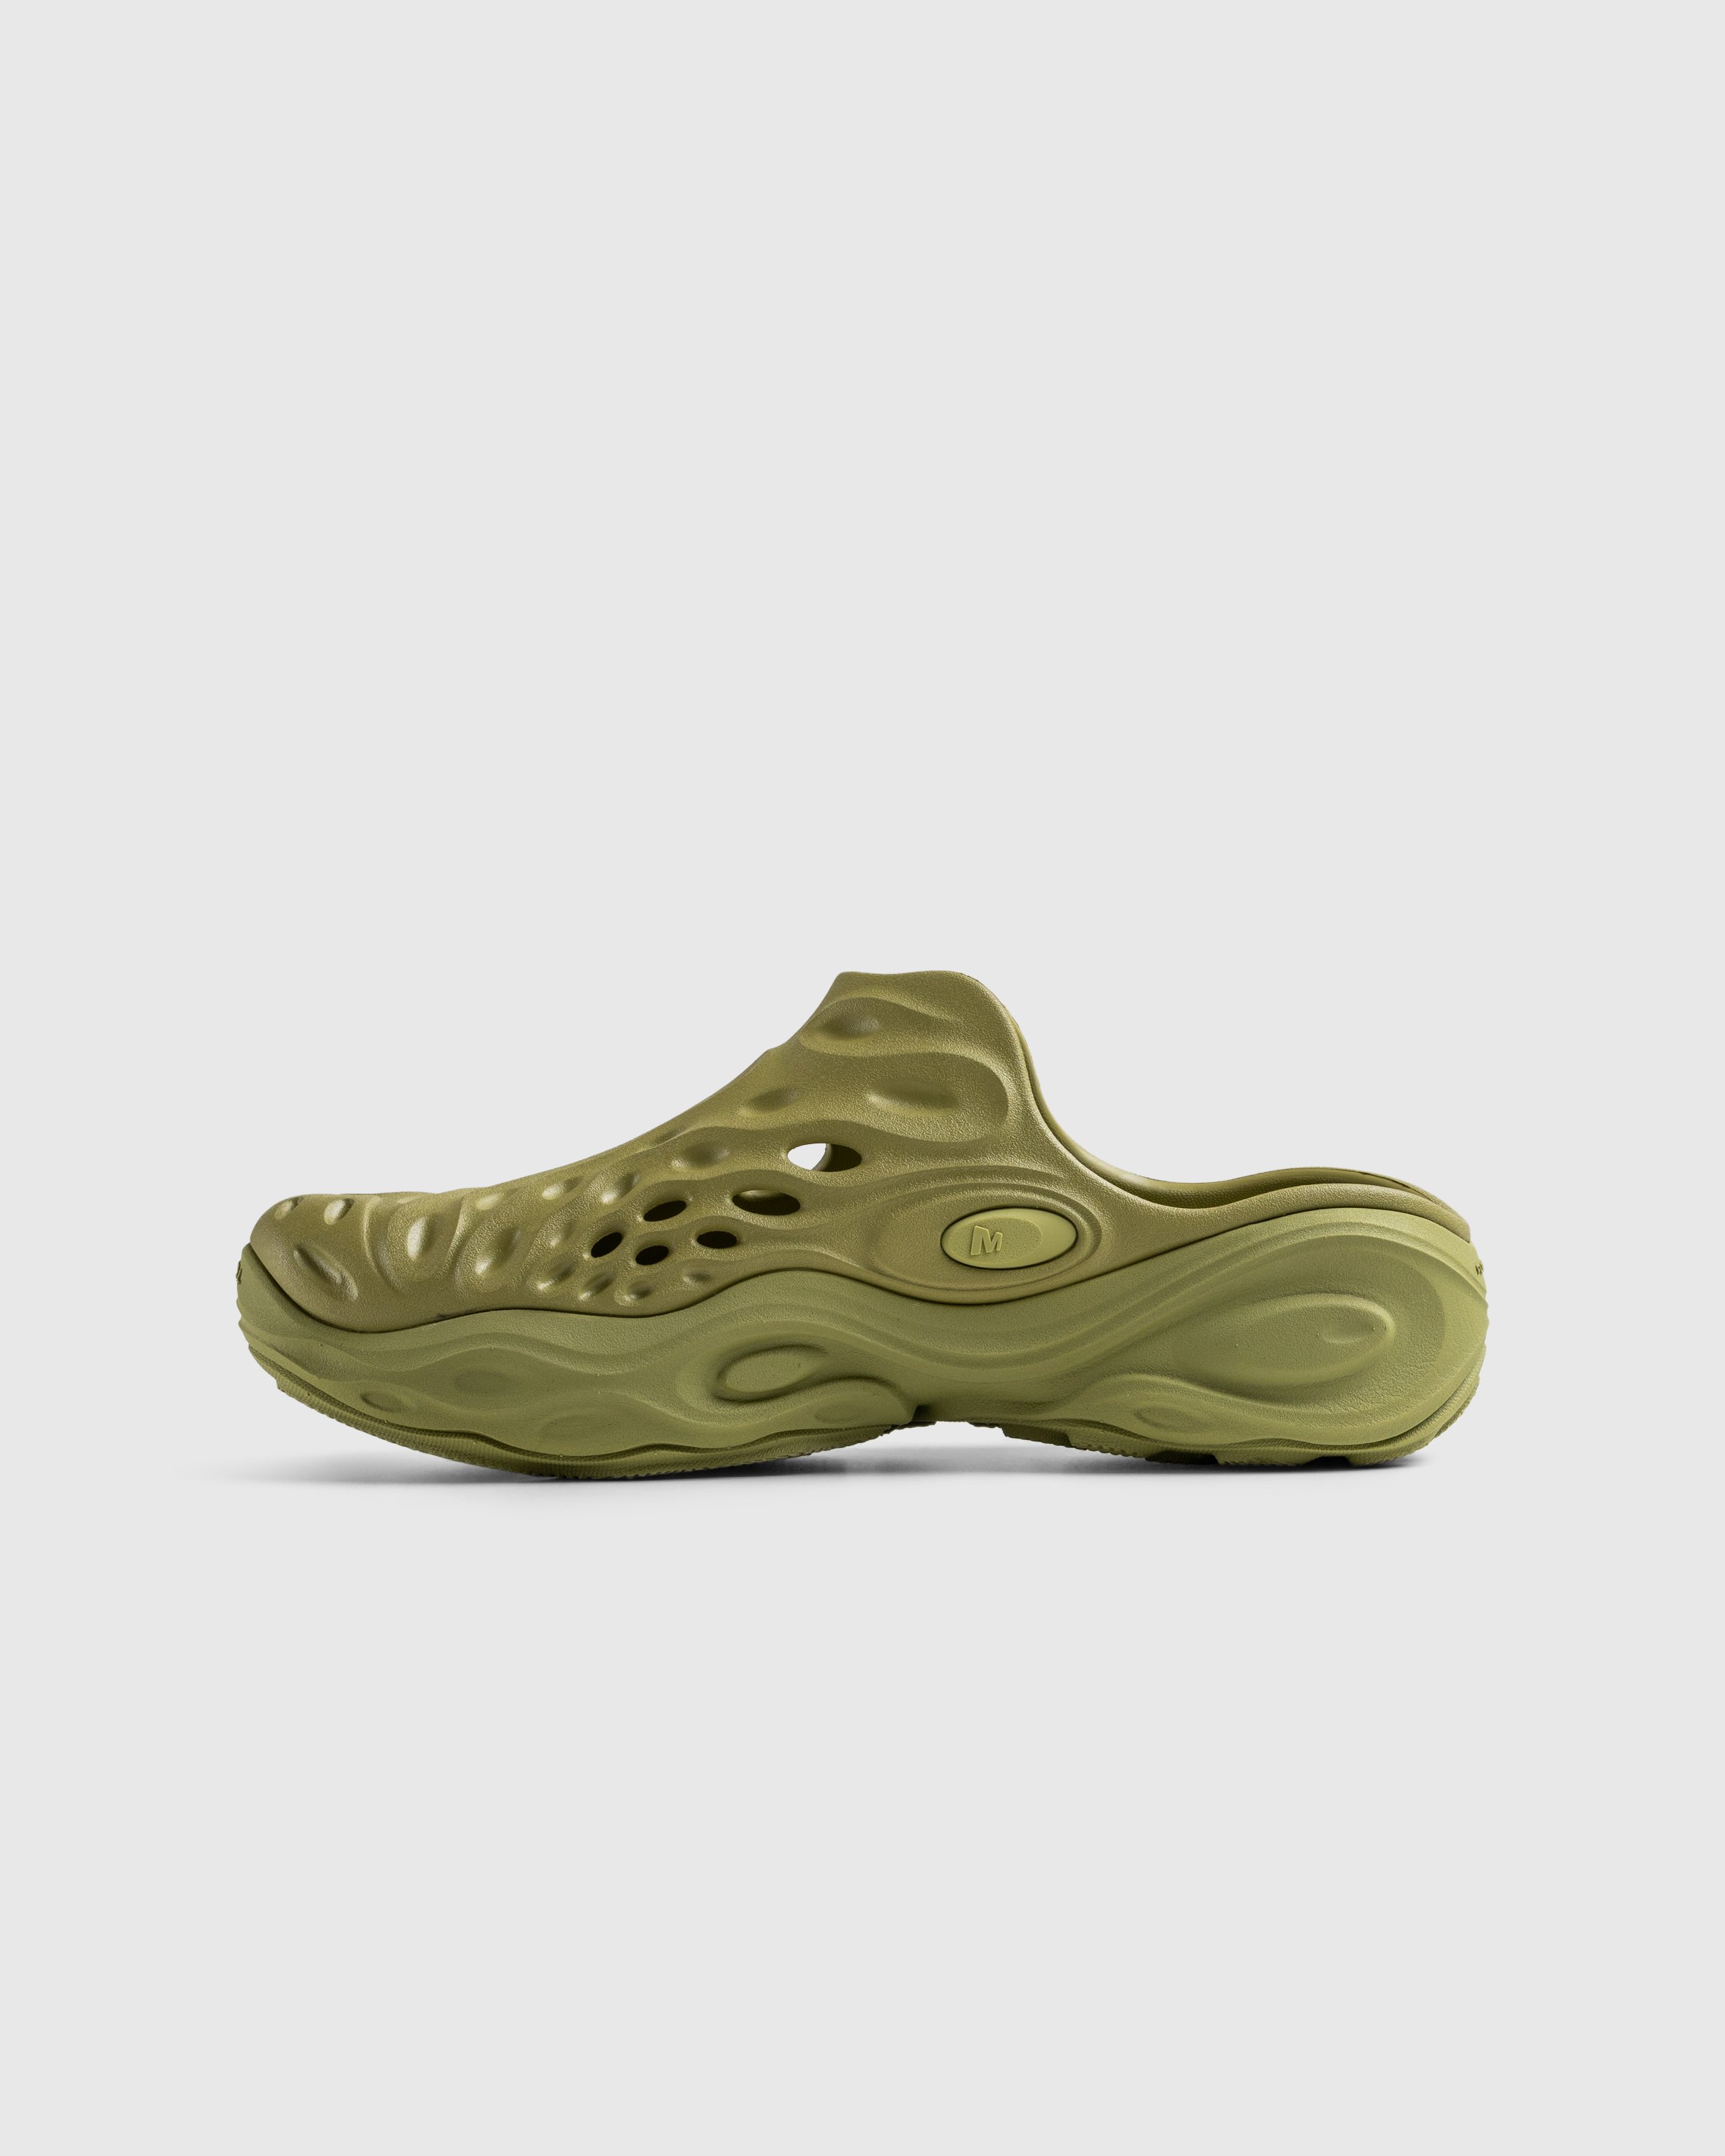 Merrell - HYDRO NEXT GEN MULE SE/TRIPLE MOSSTONE - Footwear - Green - Image 2